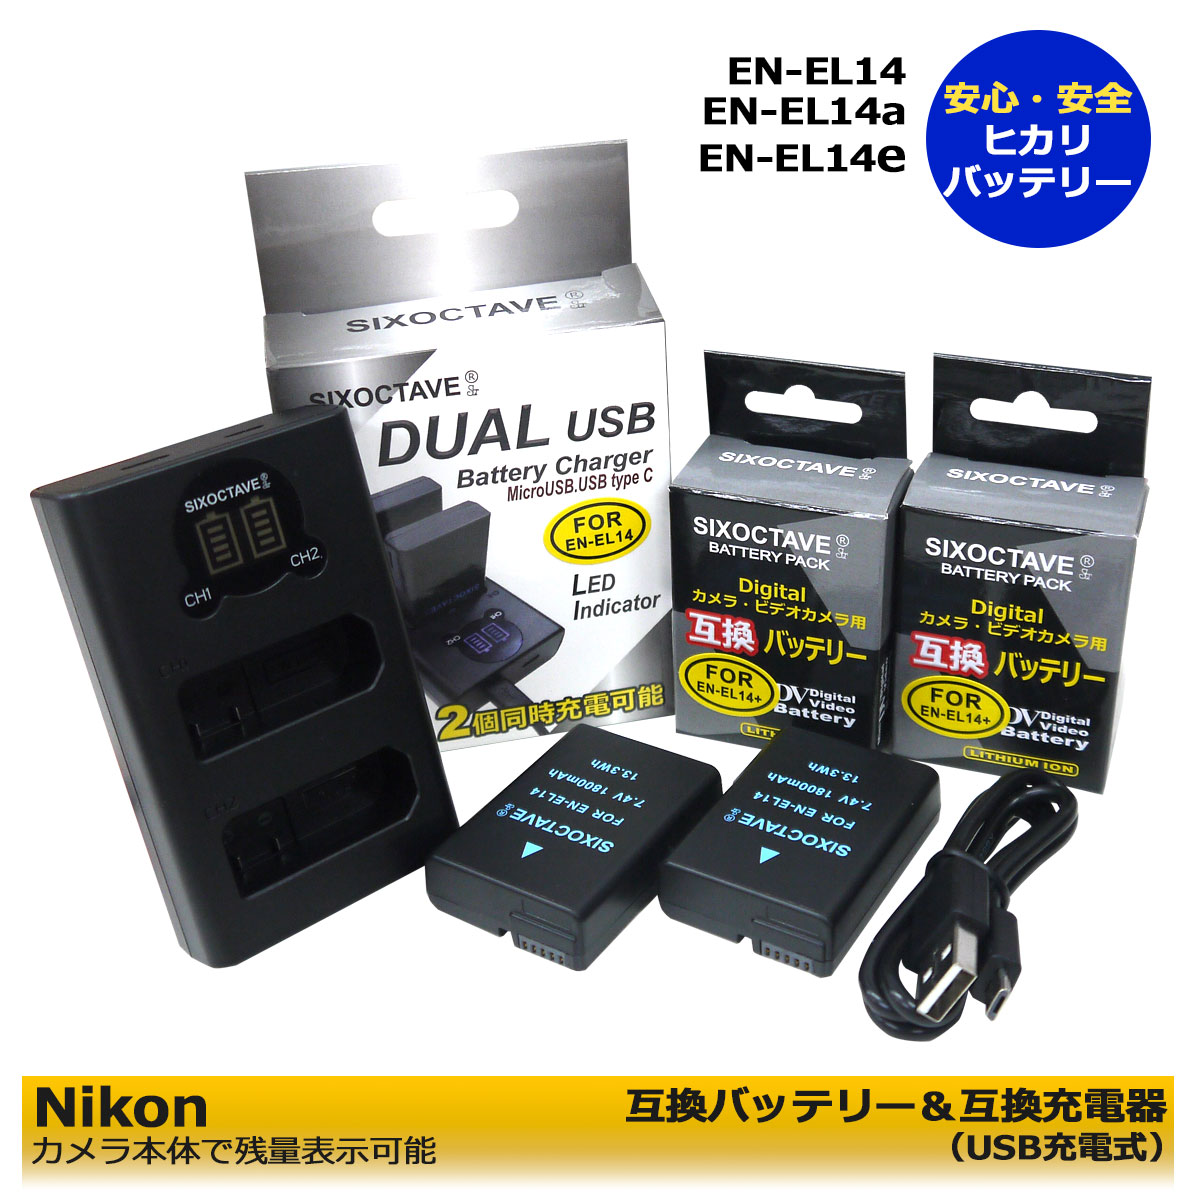 ≪送料無料≫ EN-EL14a ニコン 互換バッテリー2個 ＆ 互換USB充電器 デュアル の3点セット（2個同時充電可能）Nikon D3100/ D3200/D3300 D5100/ D5200/D5300/D5500 Df